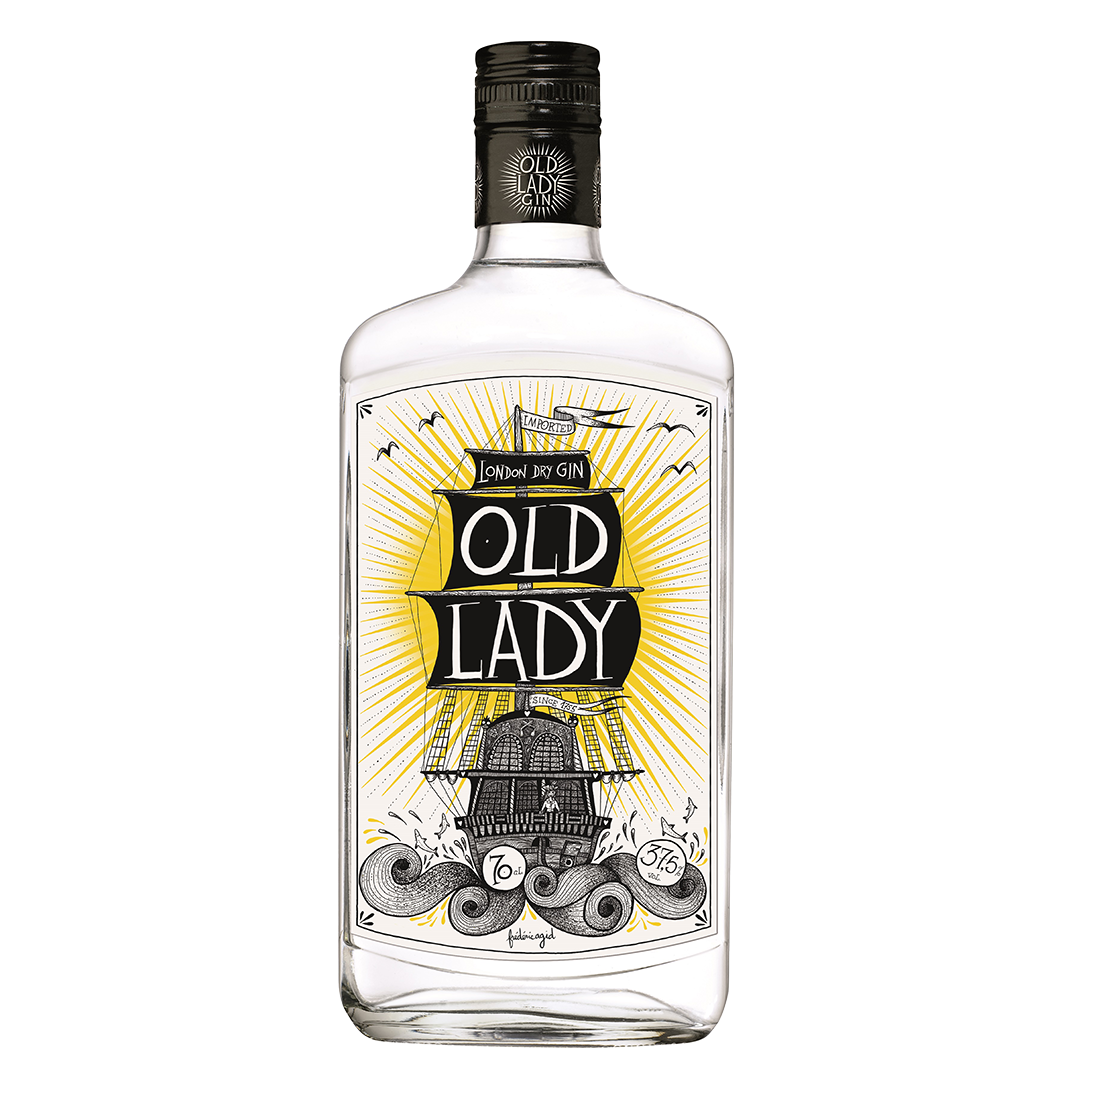 Gin 0.7. Джин Лондон драй Олд. Джин London Dry Gin. Алкоголь Джин «Dry Wood Gin Dry / драй Вуд Джин драй». Джин old Lady`s, London Dry Gin 0.7l.